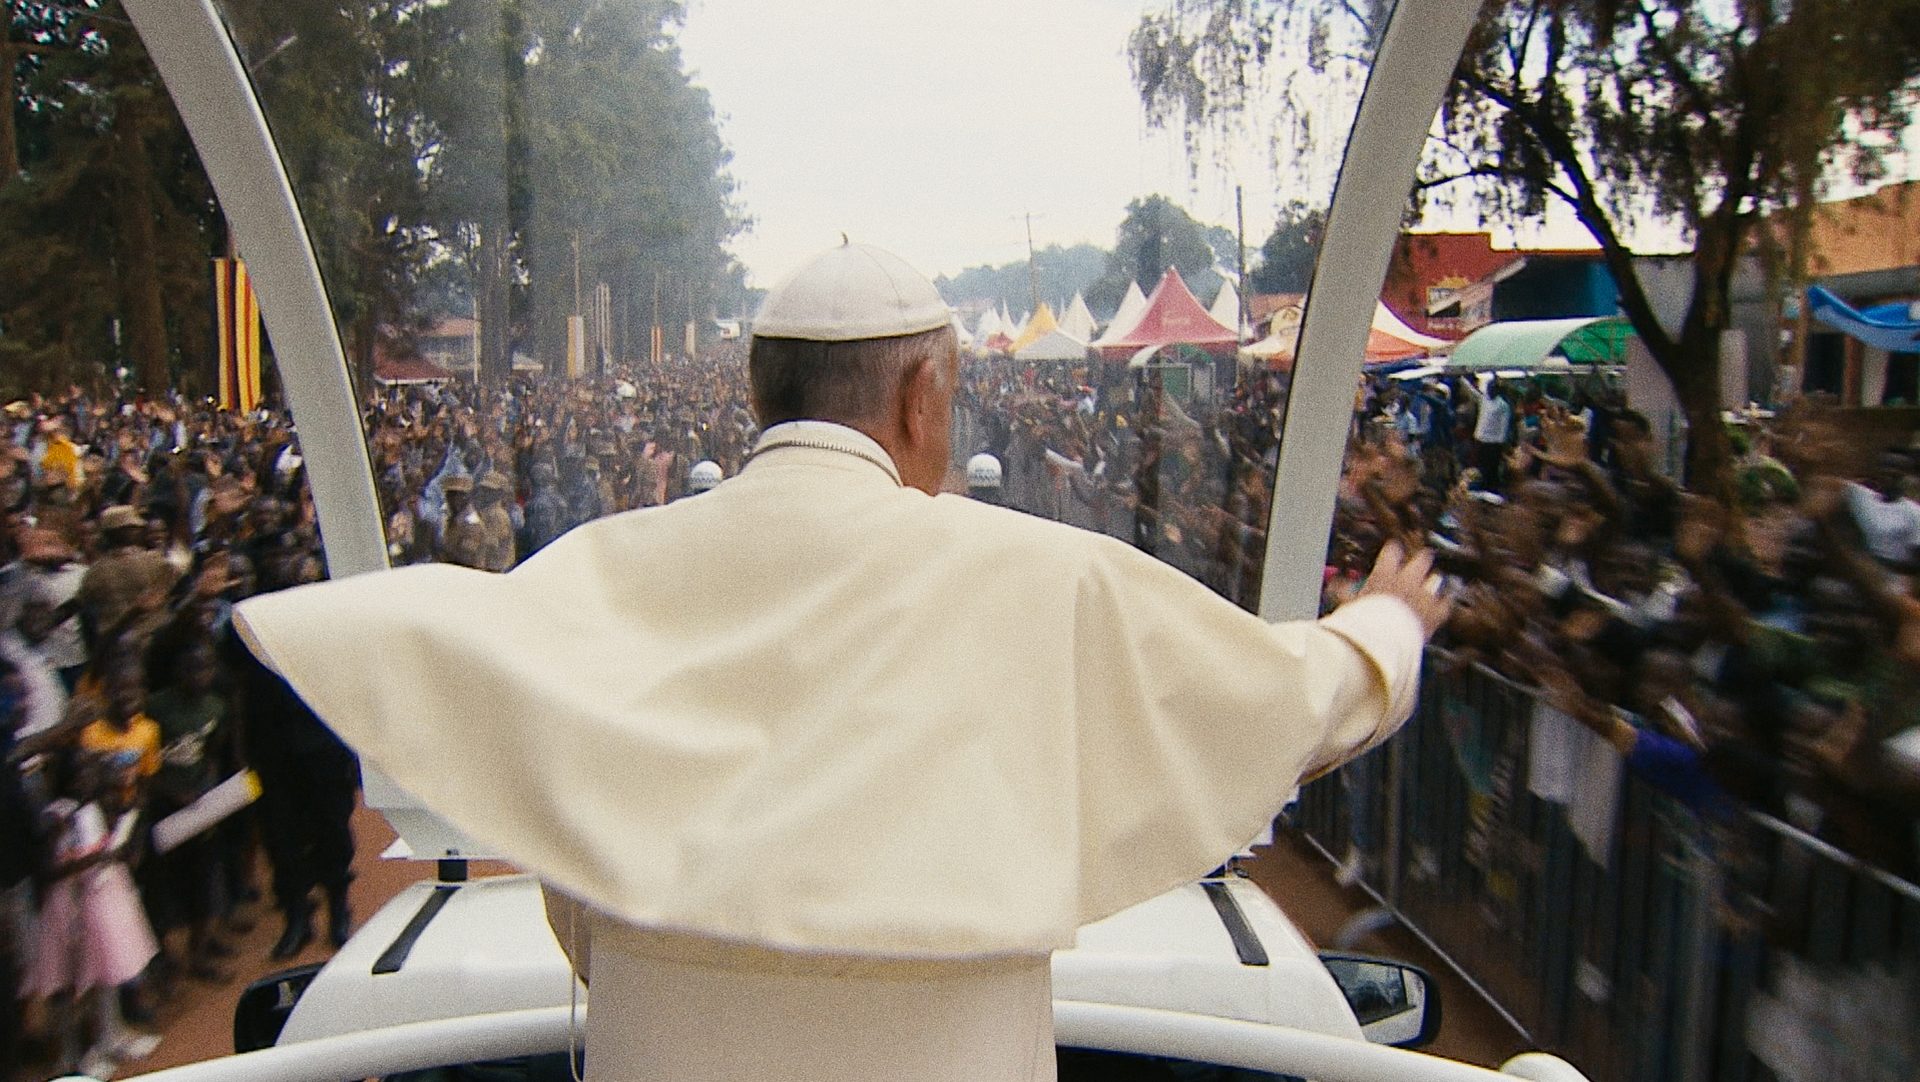 "Le pape François, une homme de parole", le film documentaire du cinéaste allemand Wim Wenders sort en Suisse romande | service de presse